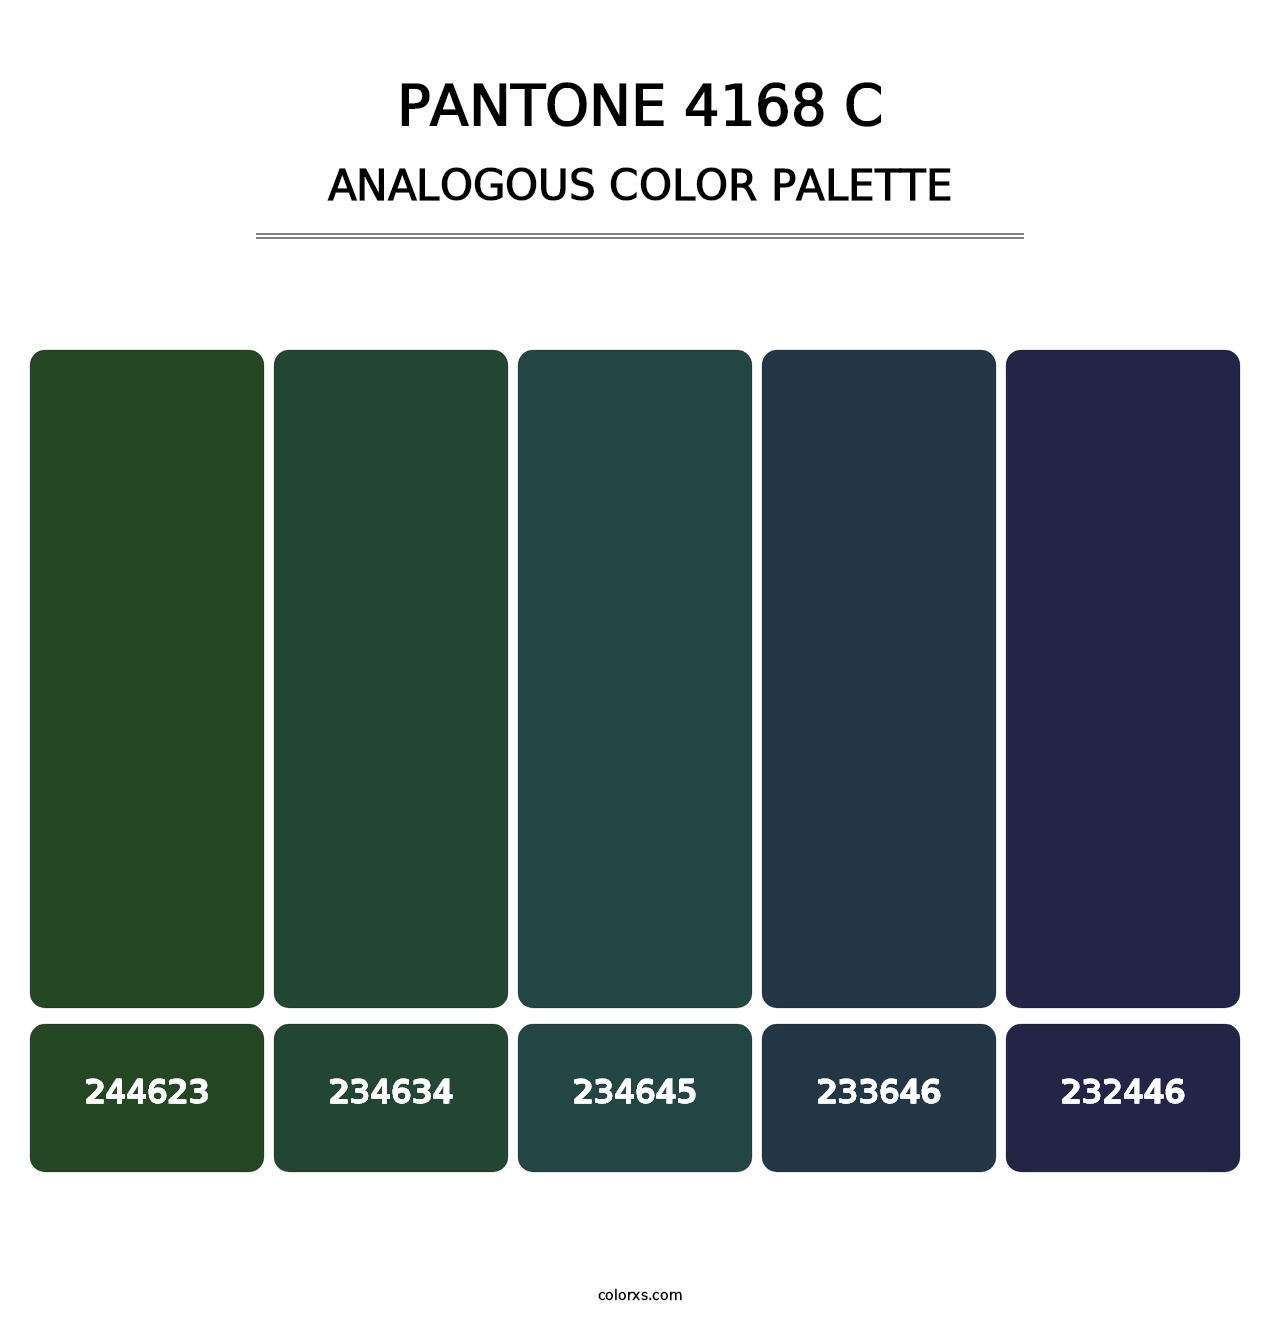 PANTONE 4168 C - Analogous Color Palette